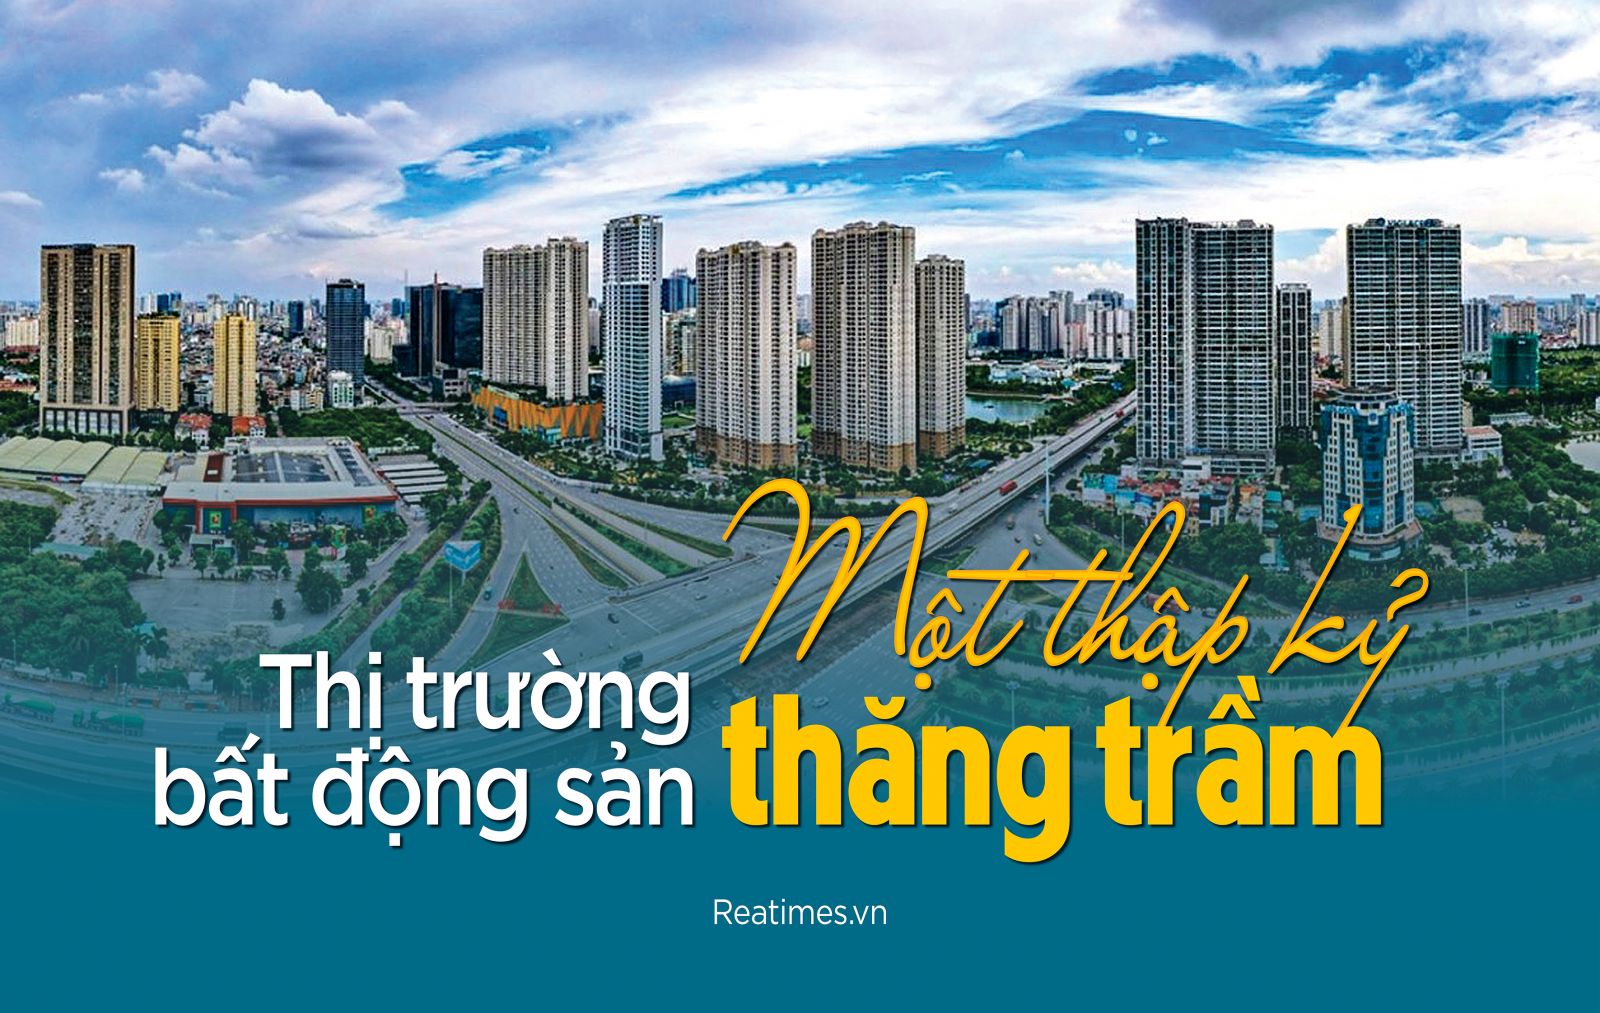 Thị trường bất động sản Việt Nam – 10 năm nhìn lại và tương lai một chu kỳ mới